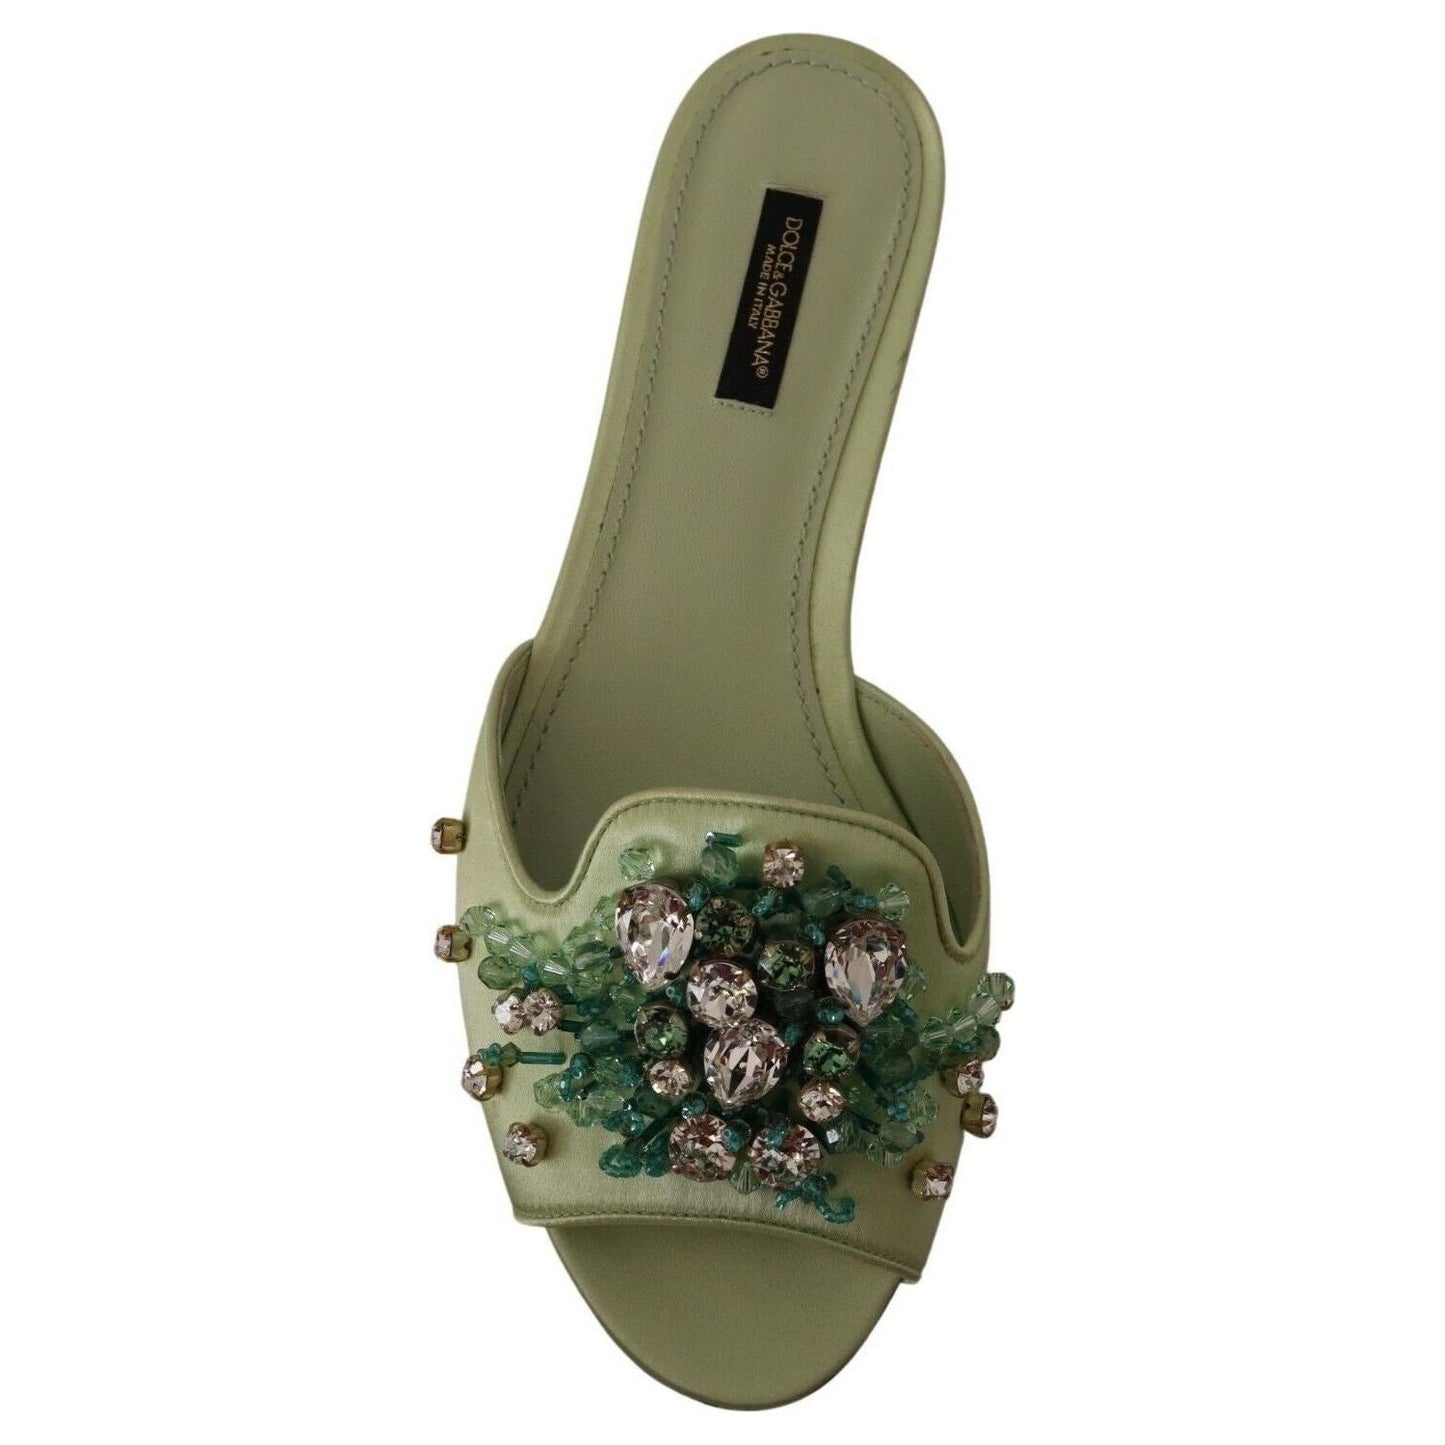 Dolce & Gabbana Elegant Crystal-Embellished Green Leather Slides green-leather-crystals-slides-women-flats-shoes